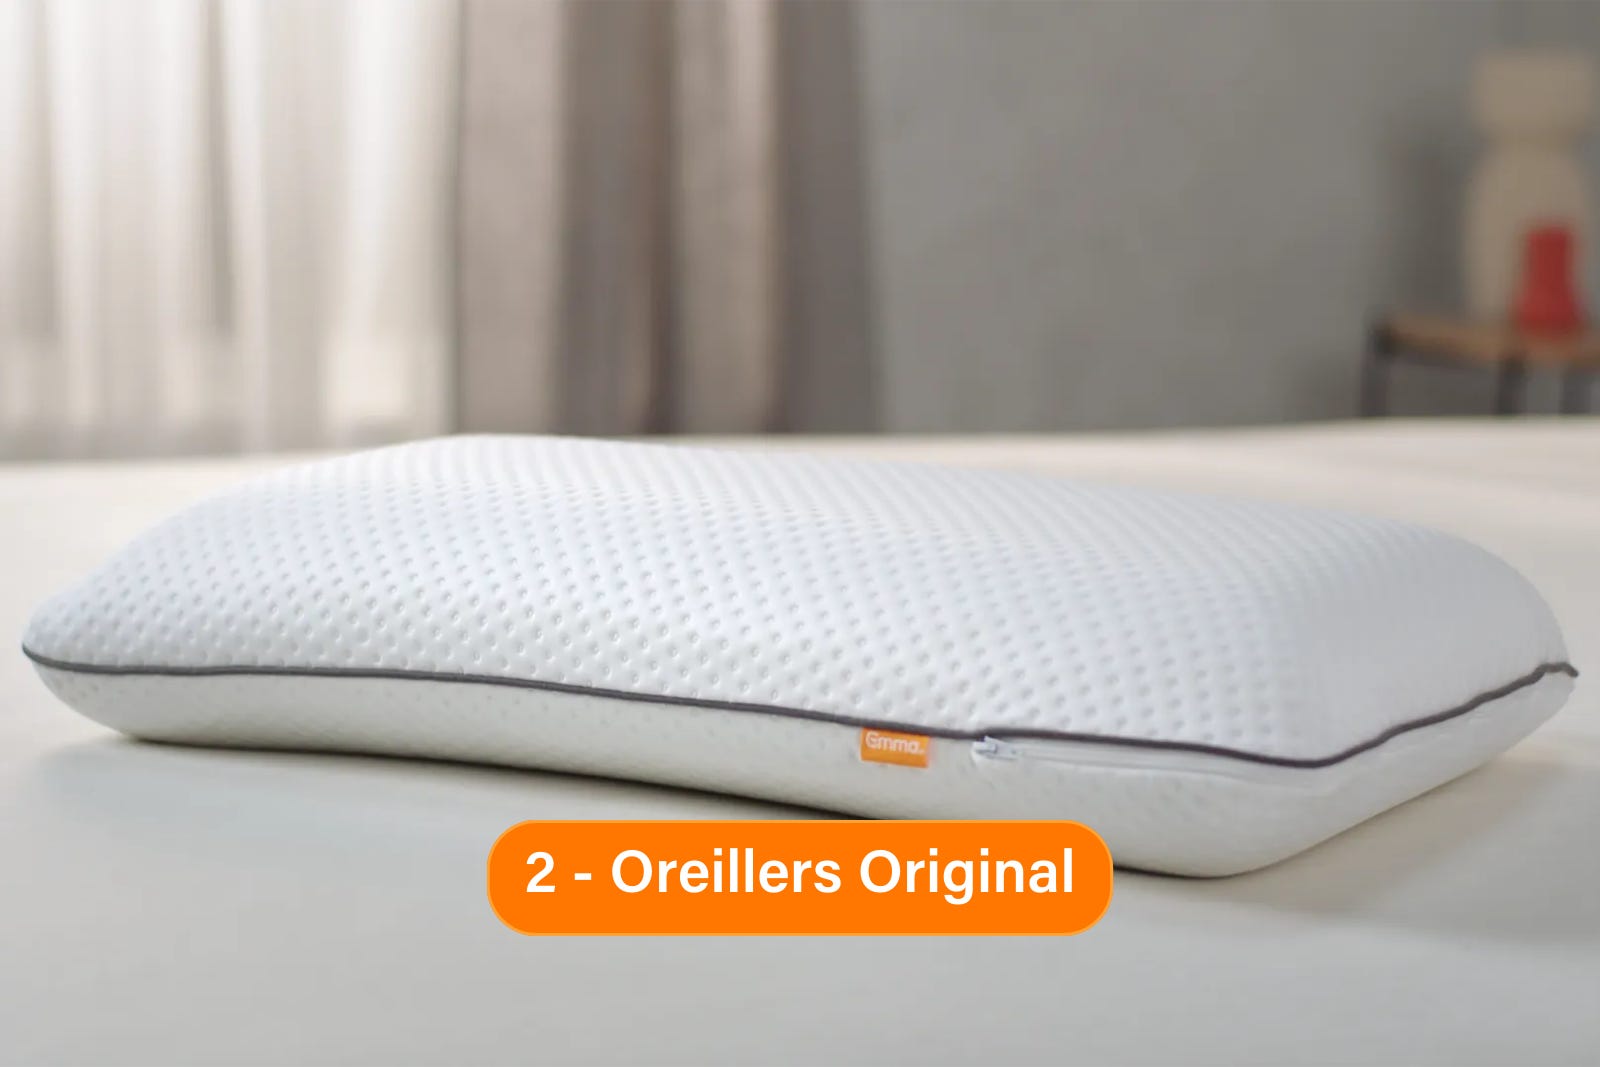 Oreiller_Original_-_sofa_bed_bundle_A.png